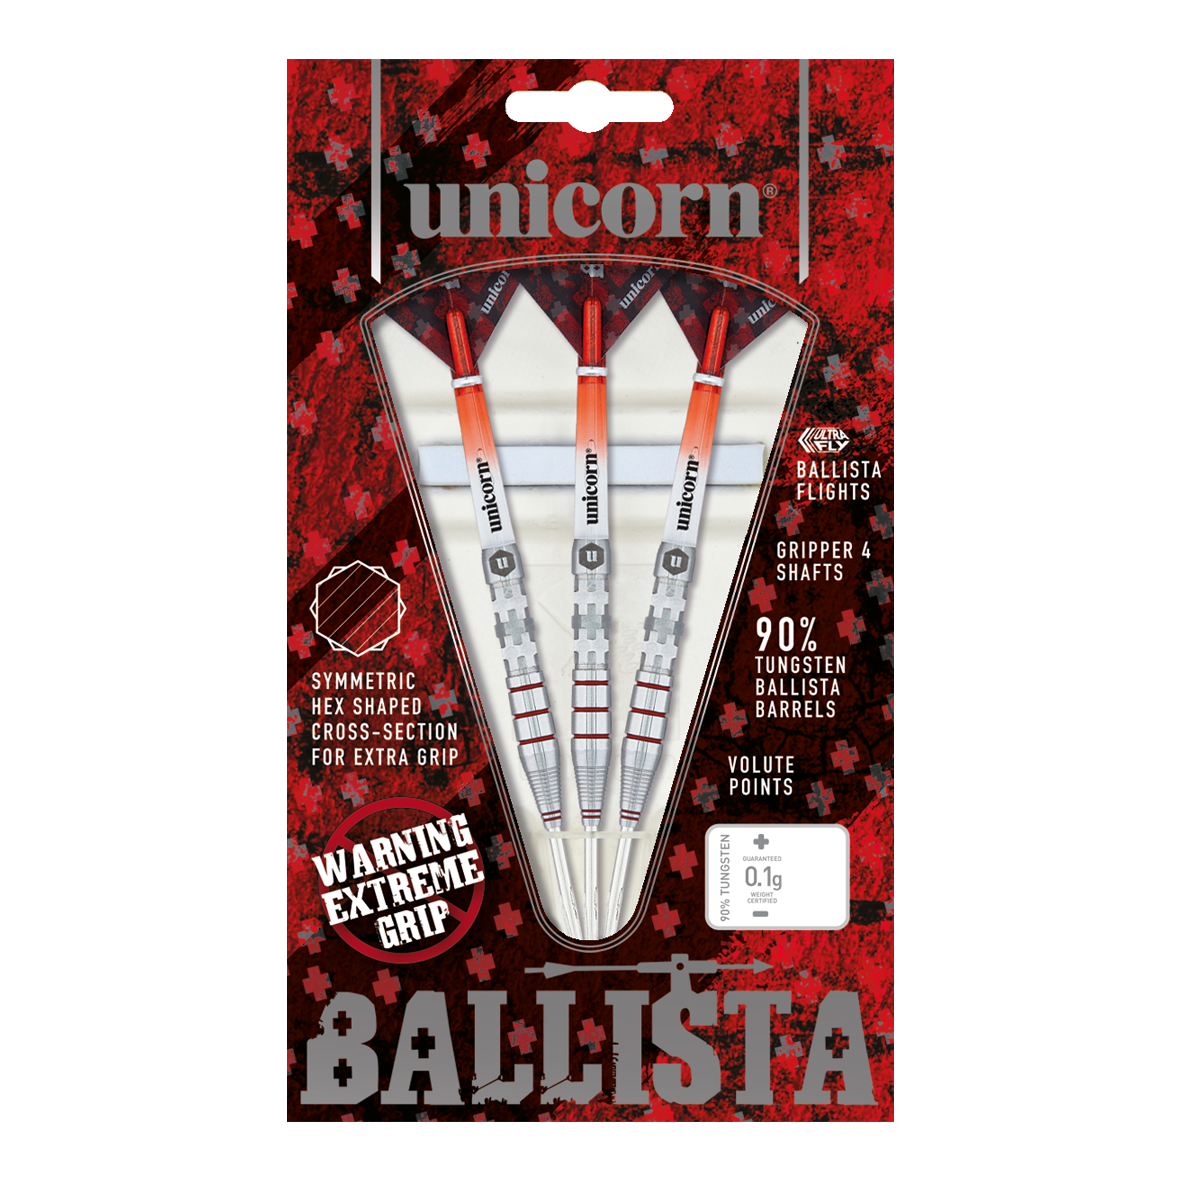 Unicorn Ballista Style 3 steel darts